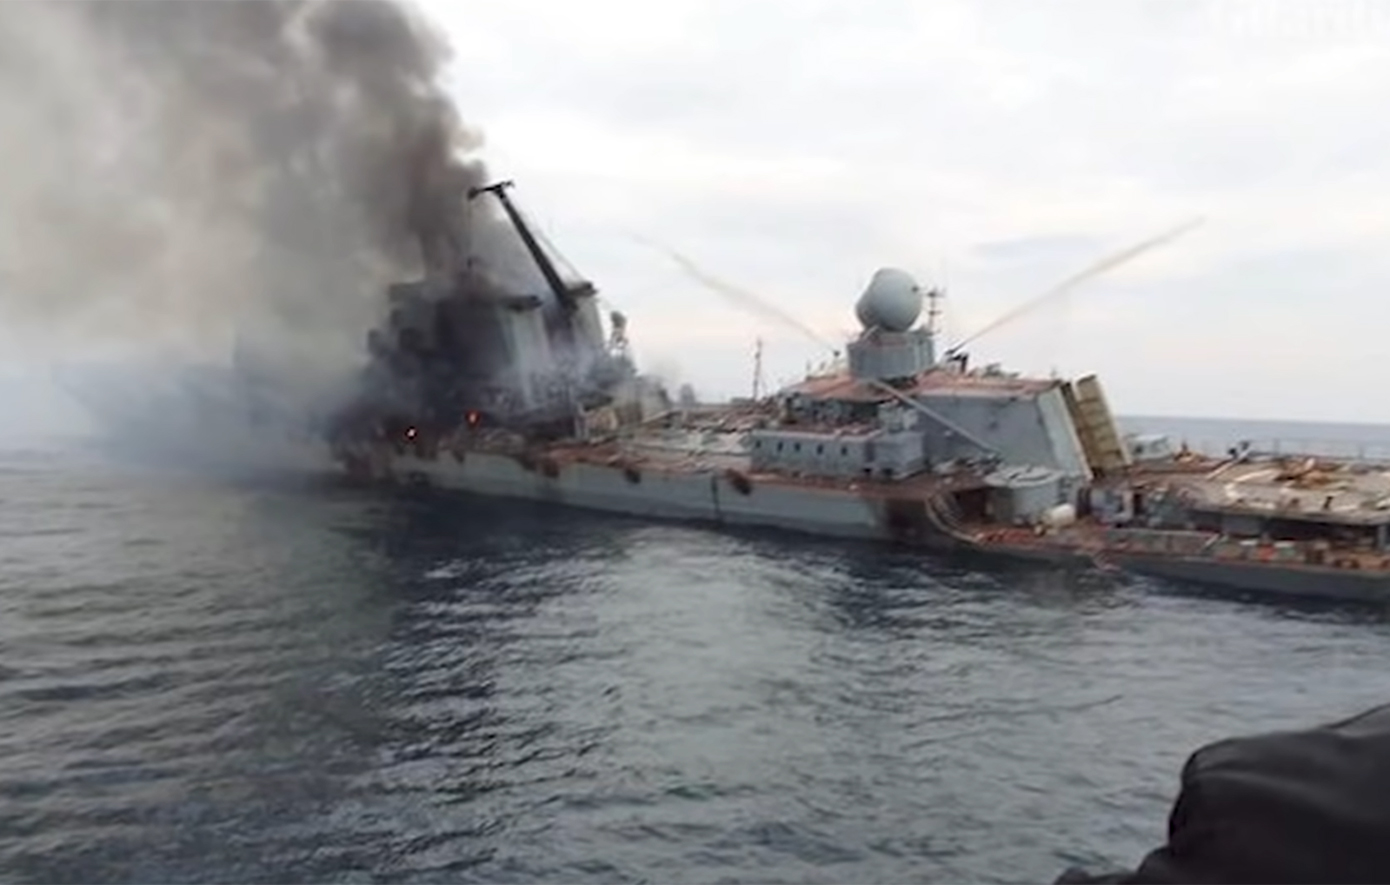 Πώς η Ουκρανία χωρίς να διαθέτει ναυτικό ταπείνωσε το ρωσικό στόλο στη Μαύρη Θάλασσα